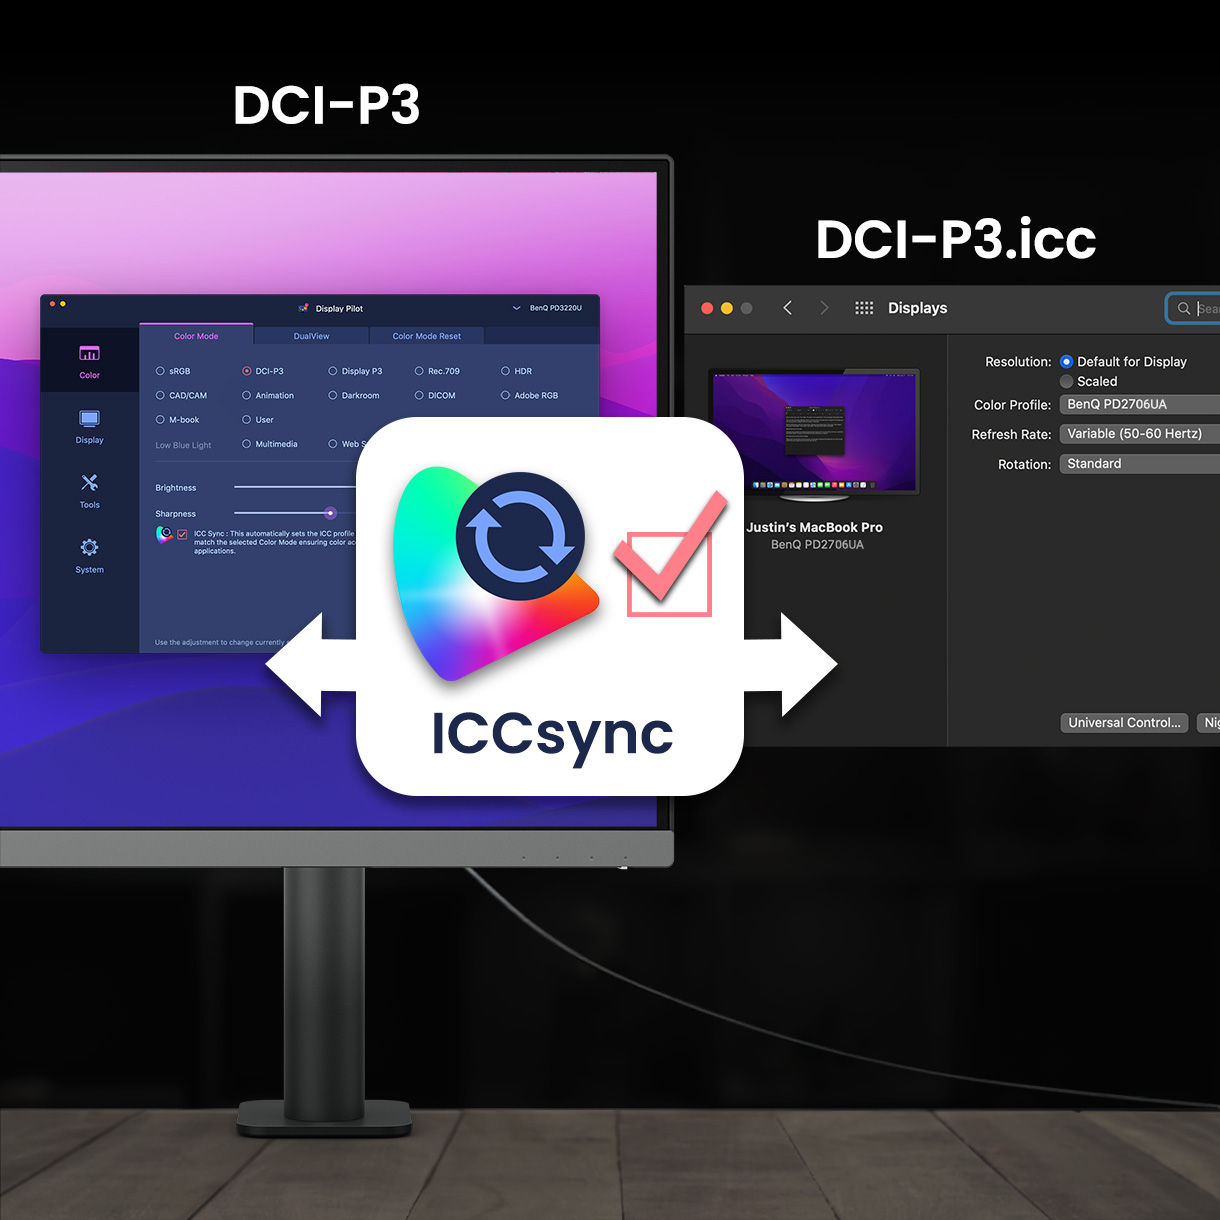 Функція BenQ ICCsync автоматично зіставляє та синхронізує профілі ICC на моніторі, коли ви змінюєте колірні режими, а також між екраном ноутбука та монітором BenQ. Усе це робиться миттєво.